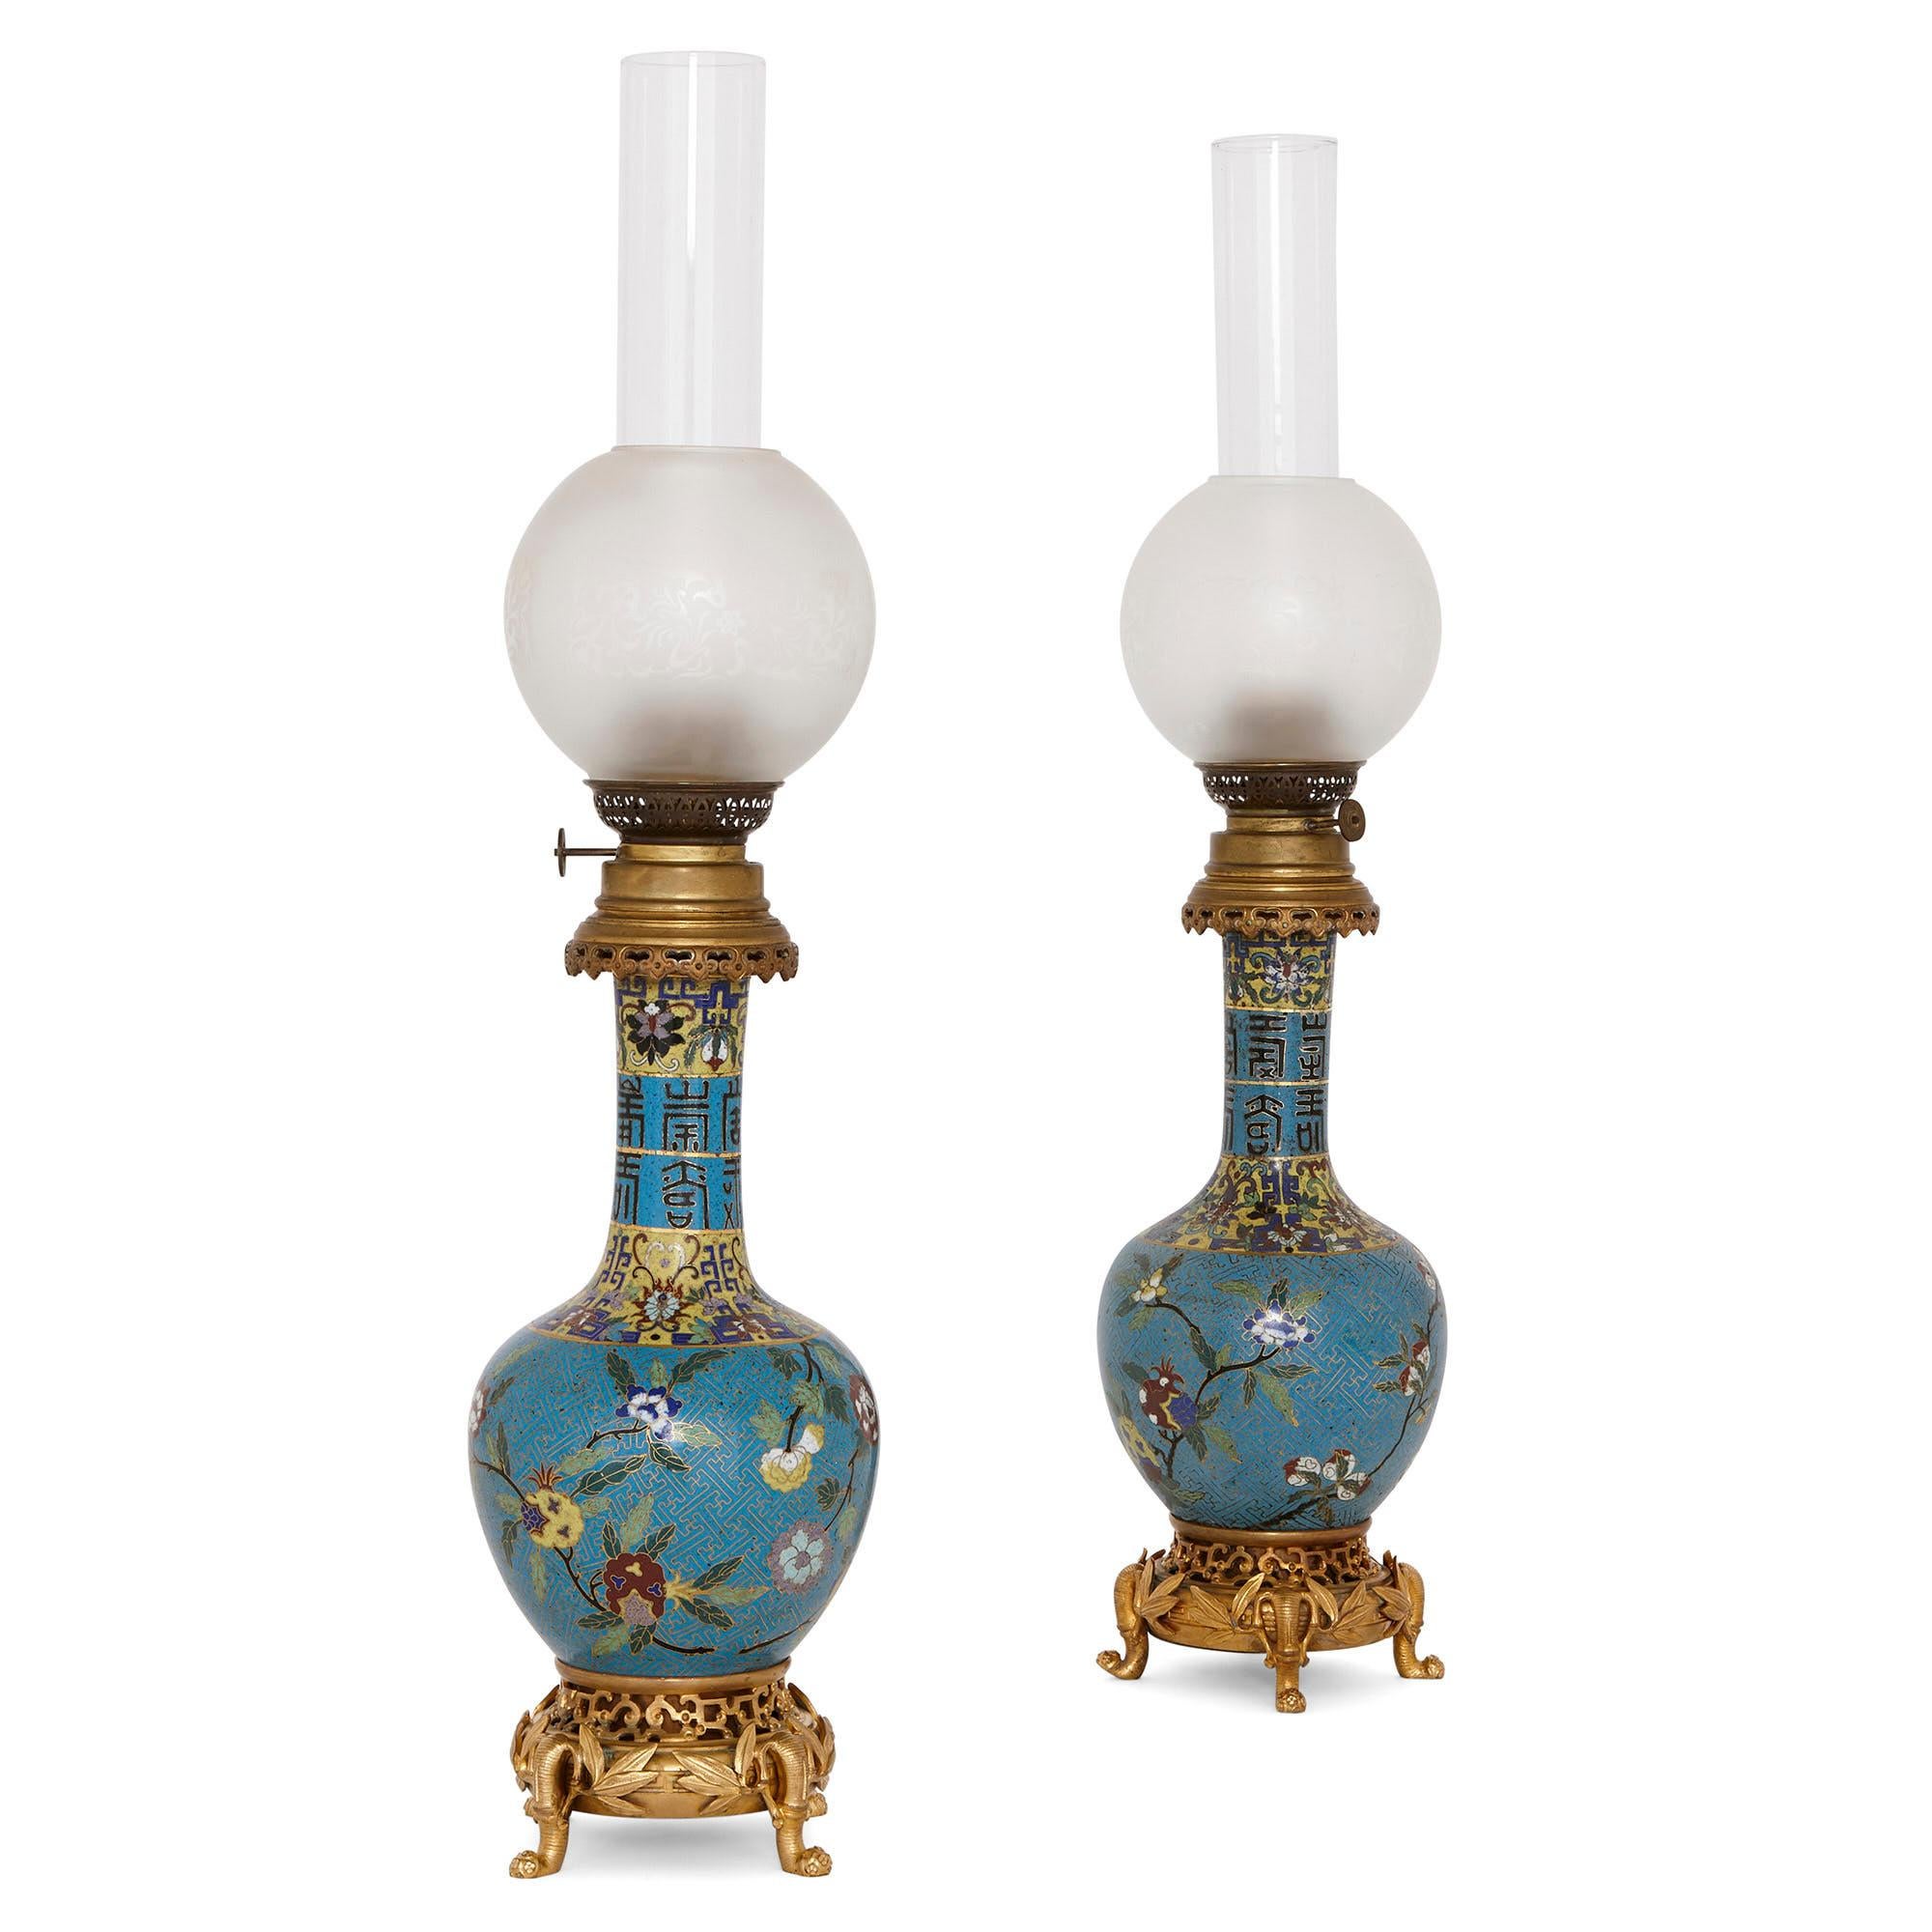 Ces magnifiques lampes à huile ont été créées en France à la fin du 19ème  siècle. Ils sont conçus dans un merveilleux style chinoiserie, une version européenne des arts décoratifs chinois. 

Les lampes sont de conception identique. Chaque lampe